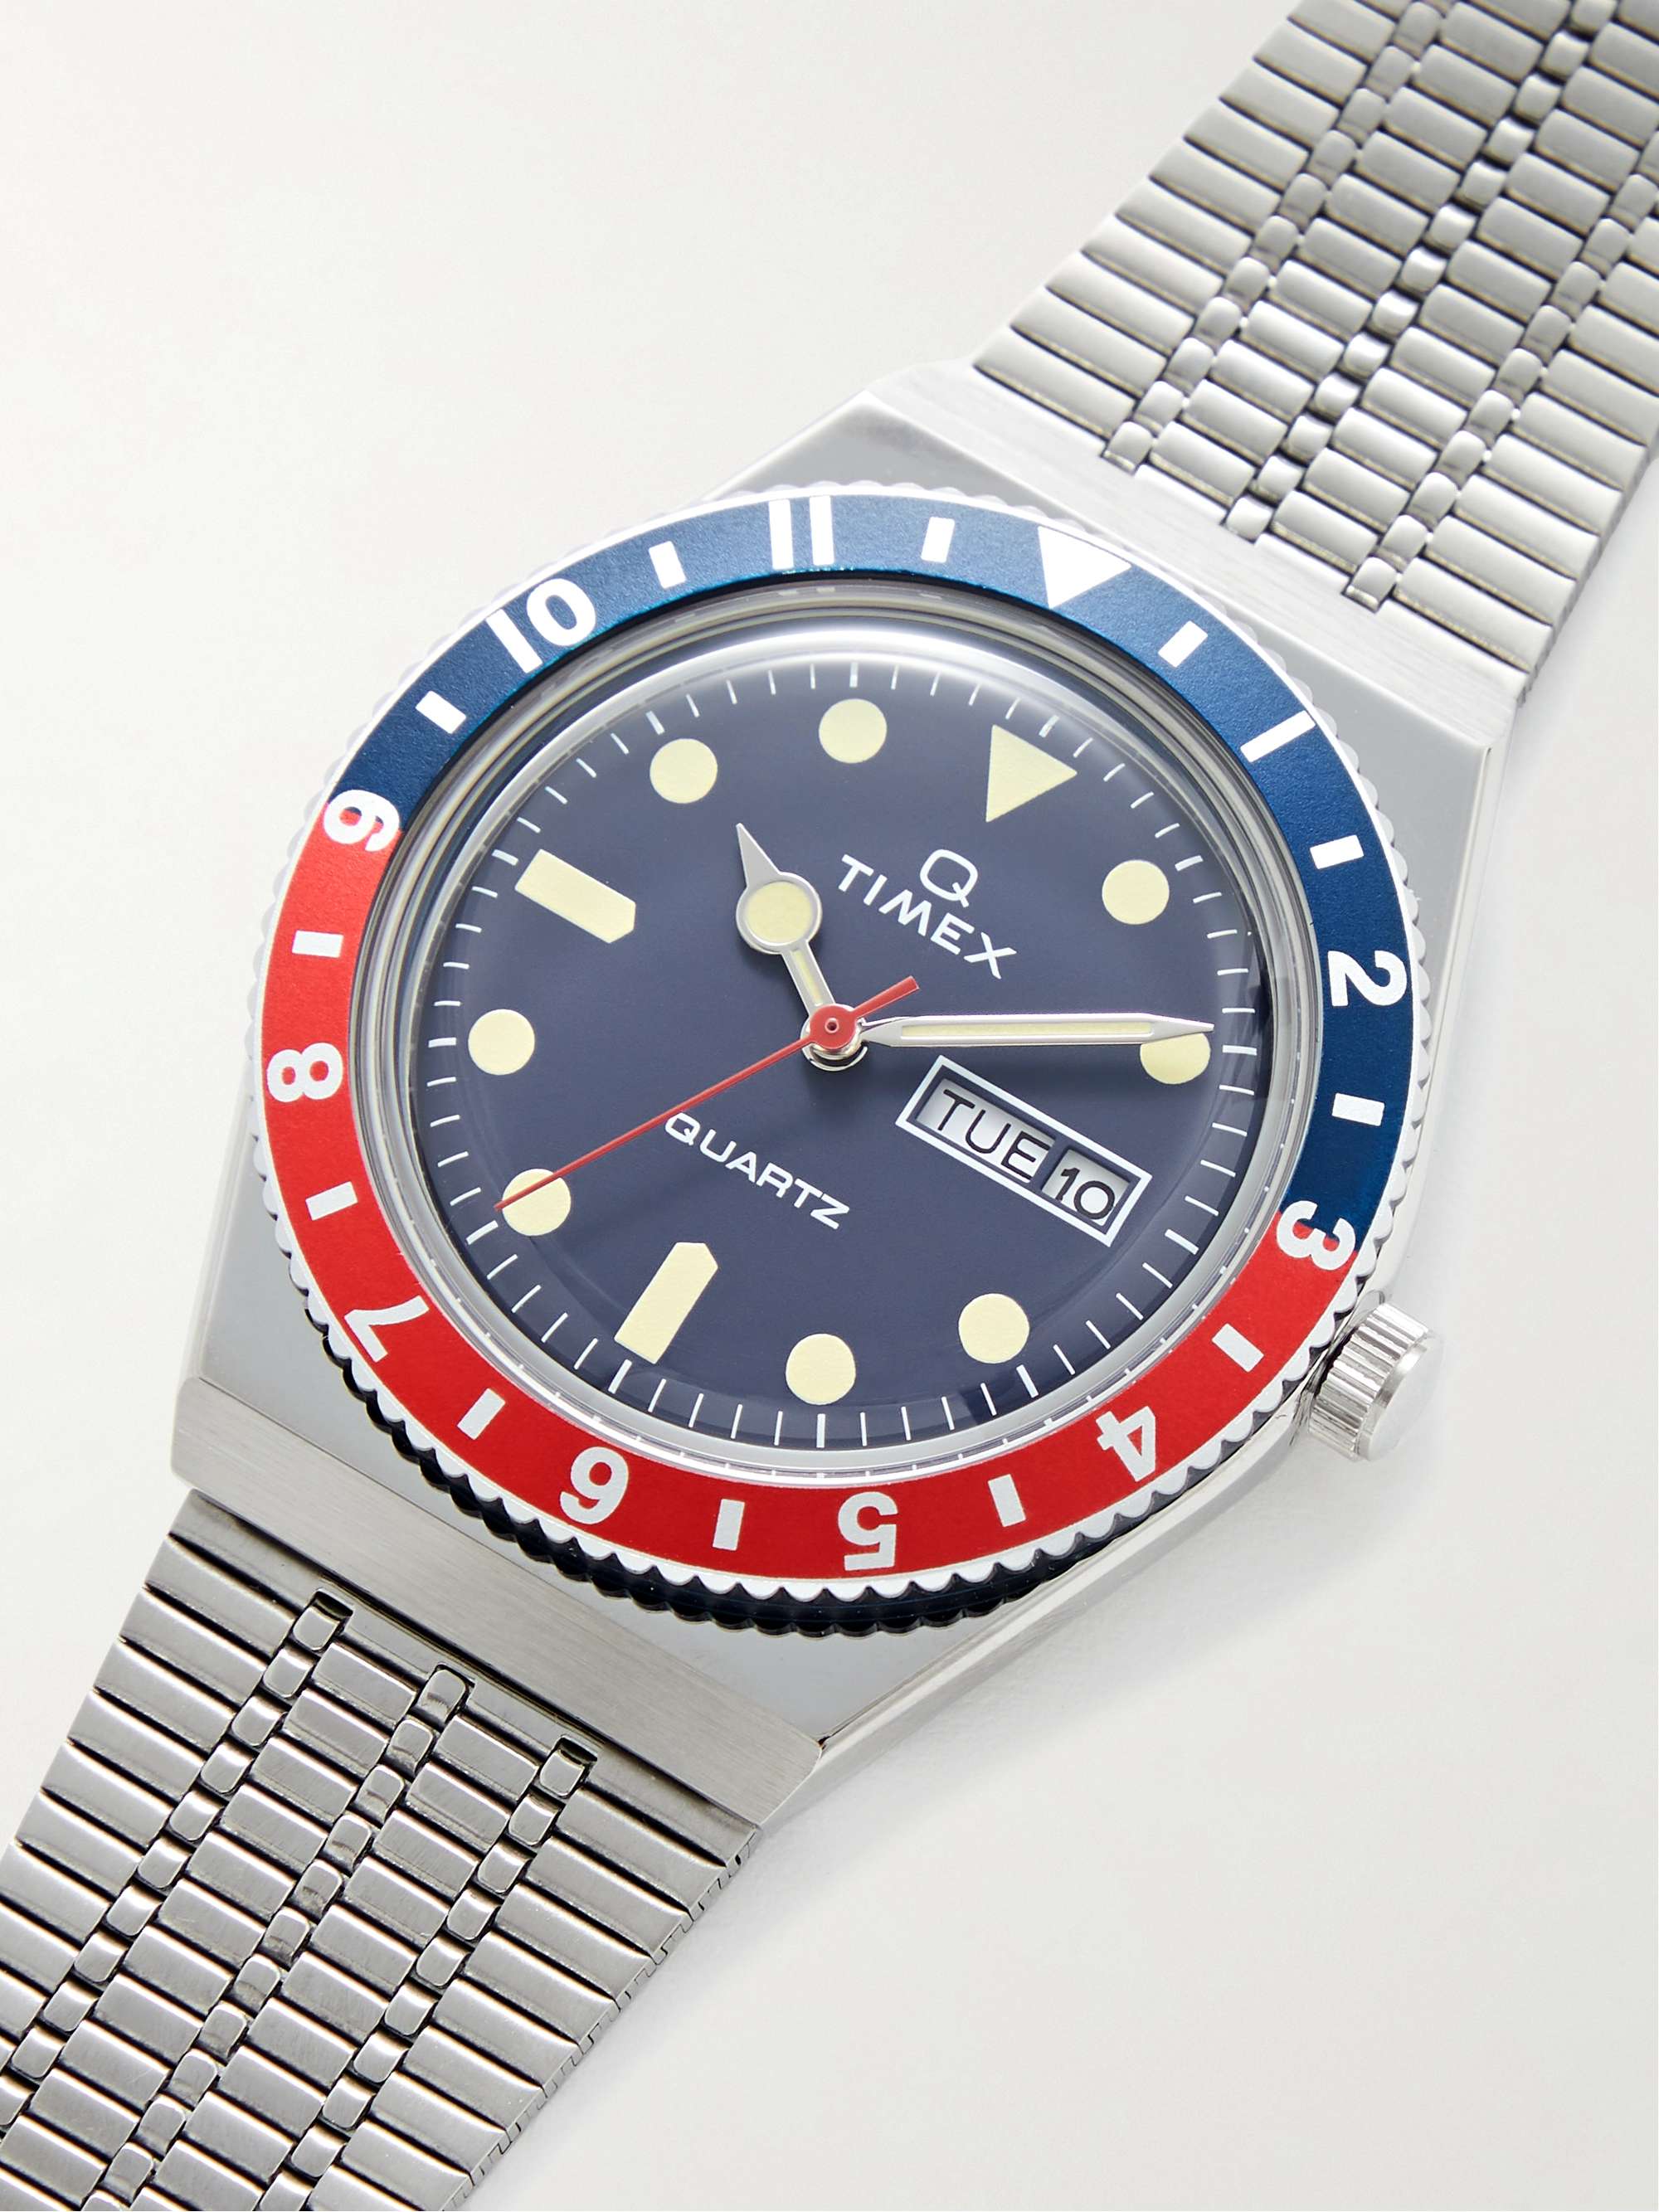 TIMEX Q Timex Reissue 38mm Stainless Steel Watch